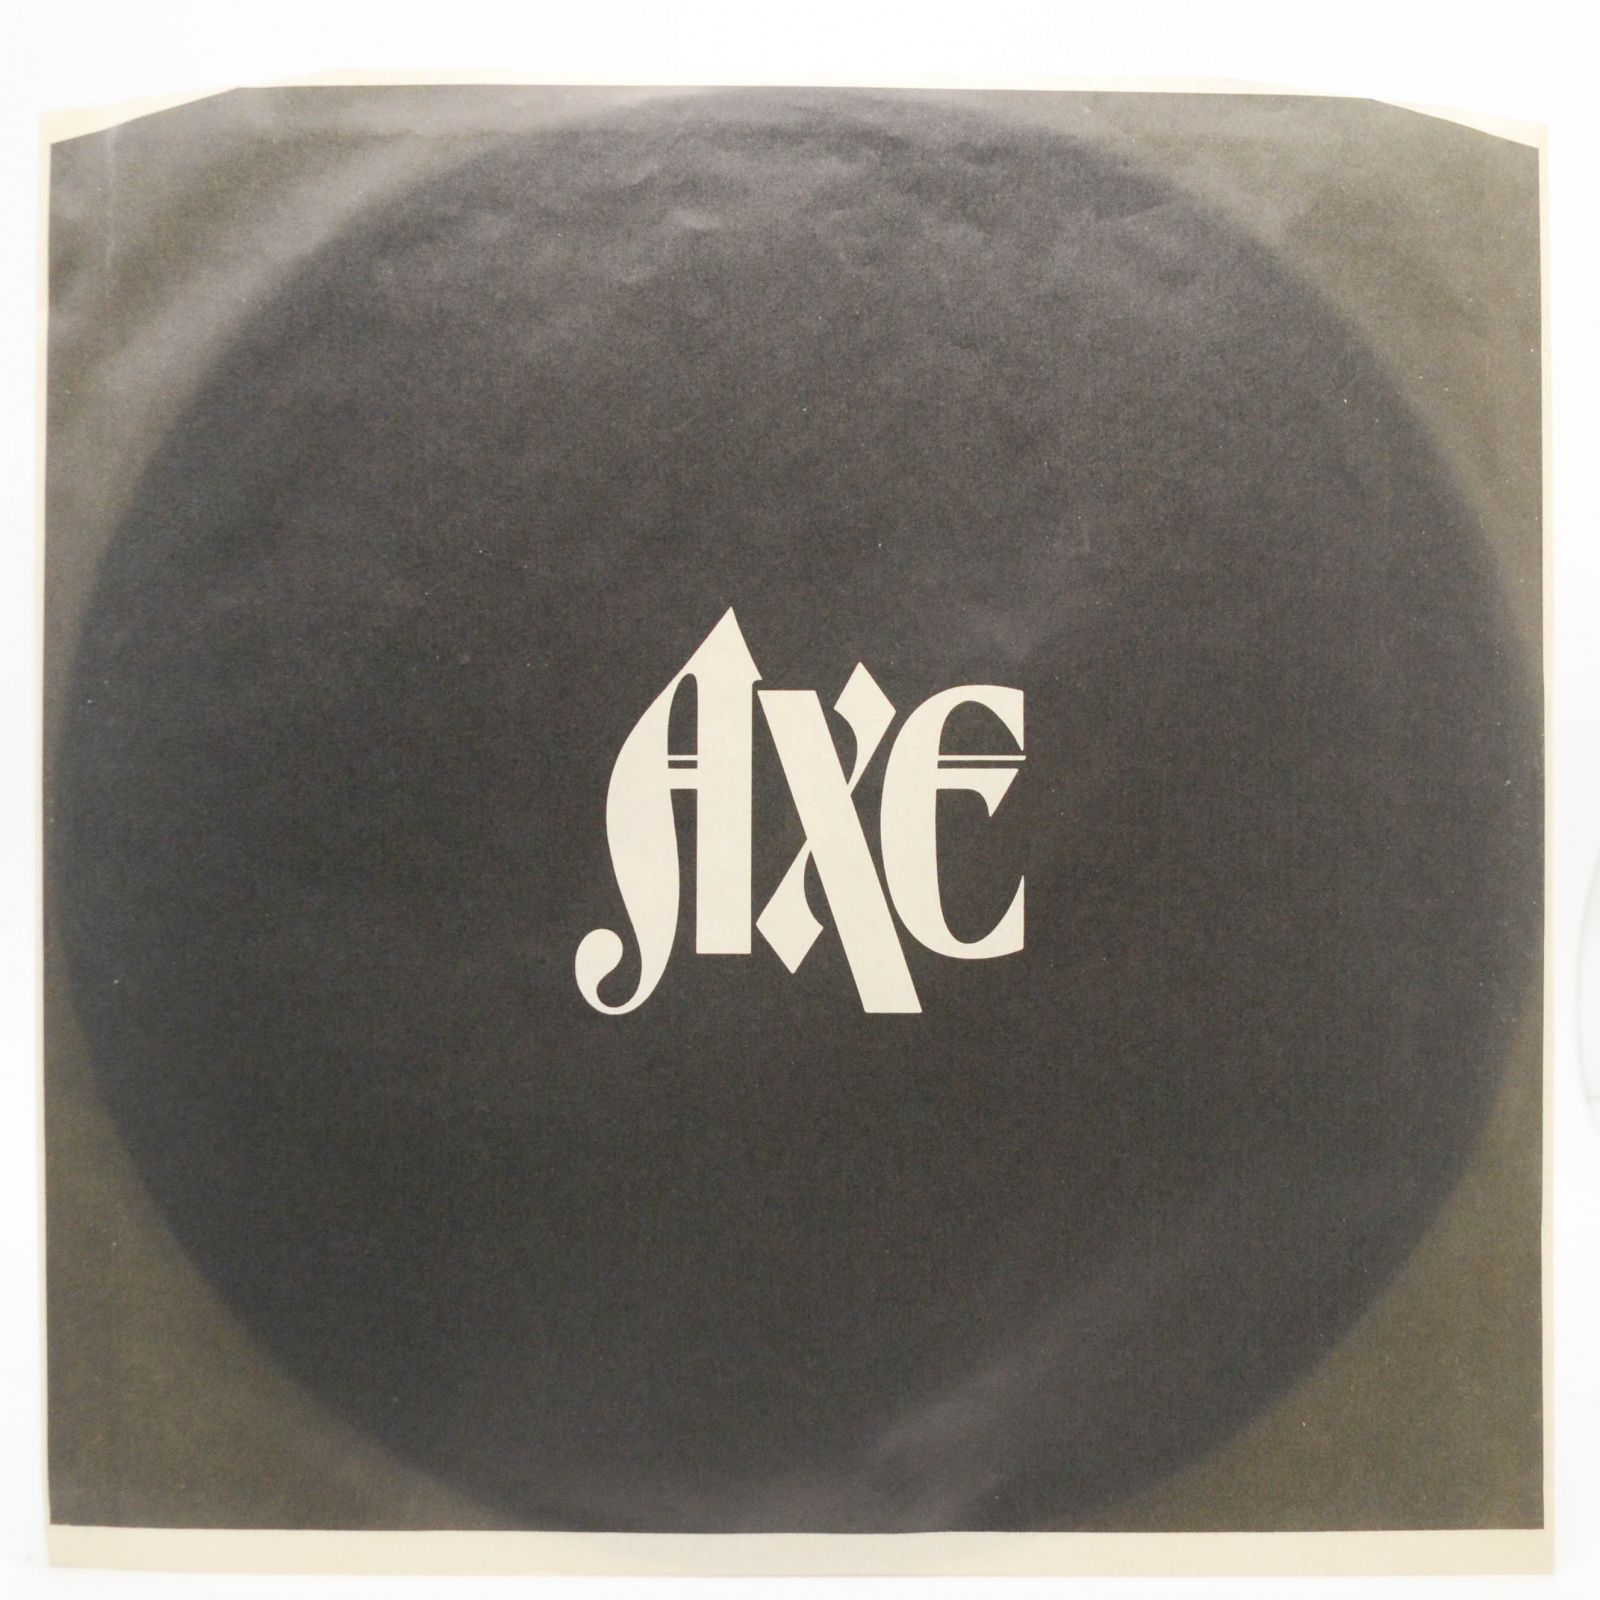 Axe — Nemesis, 1983